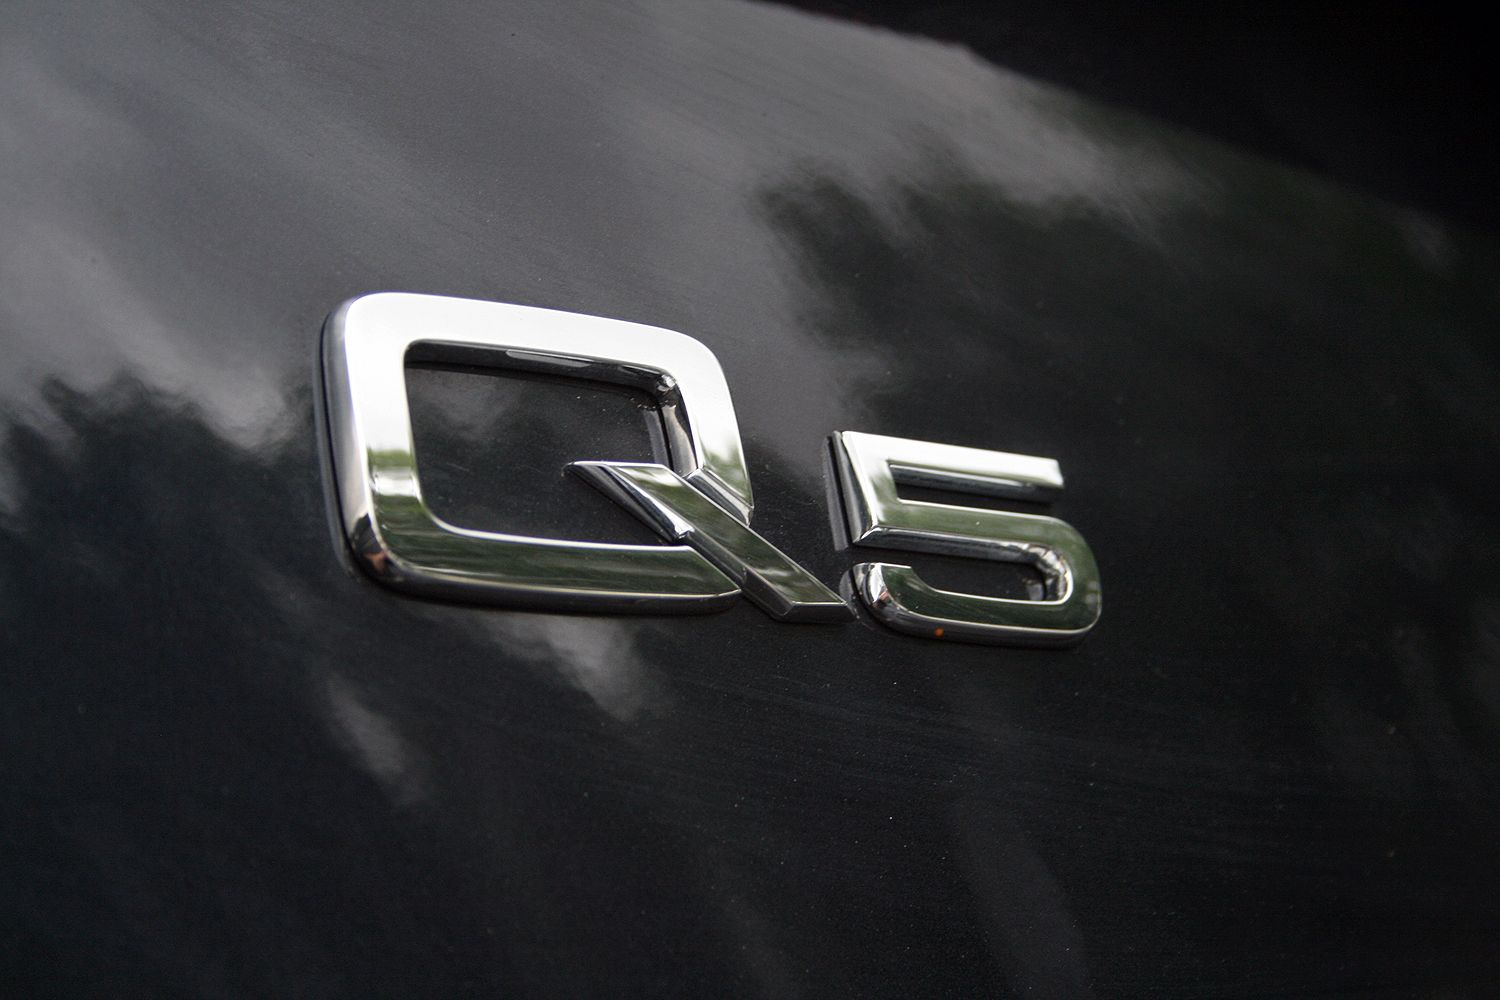 2015 Audi Q5 TDI - Driven